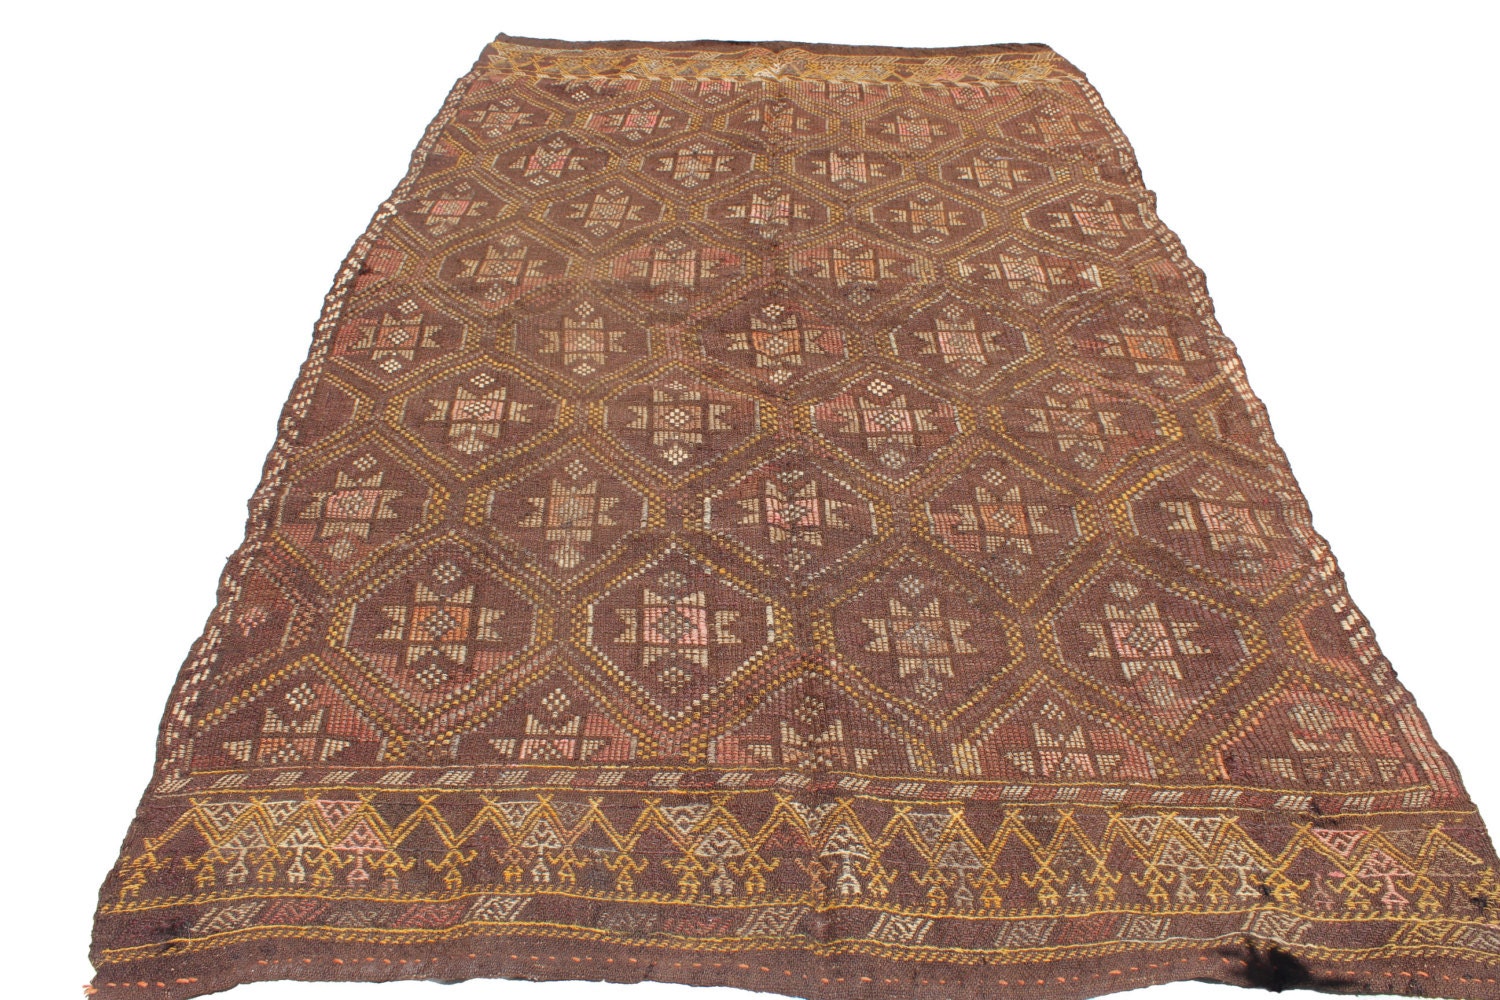 Vintage Handwoven Wool Rug Handmade Turkish Decorative Kilim | Etsy